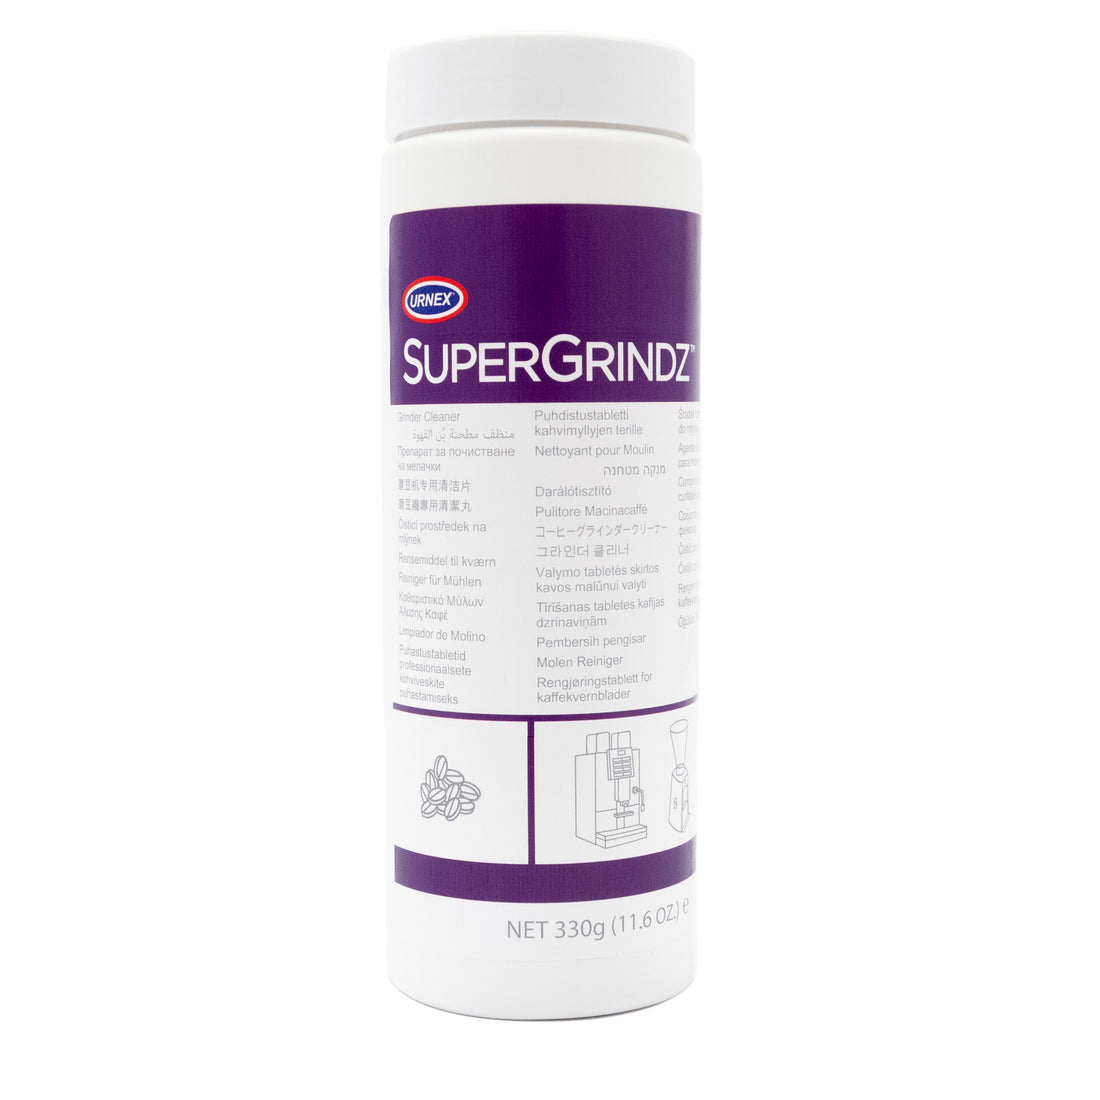 Urnex SuperGrindz Super-Automatic Grinder Cleaner